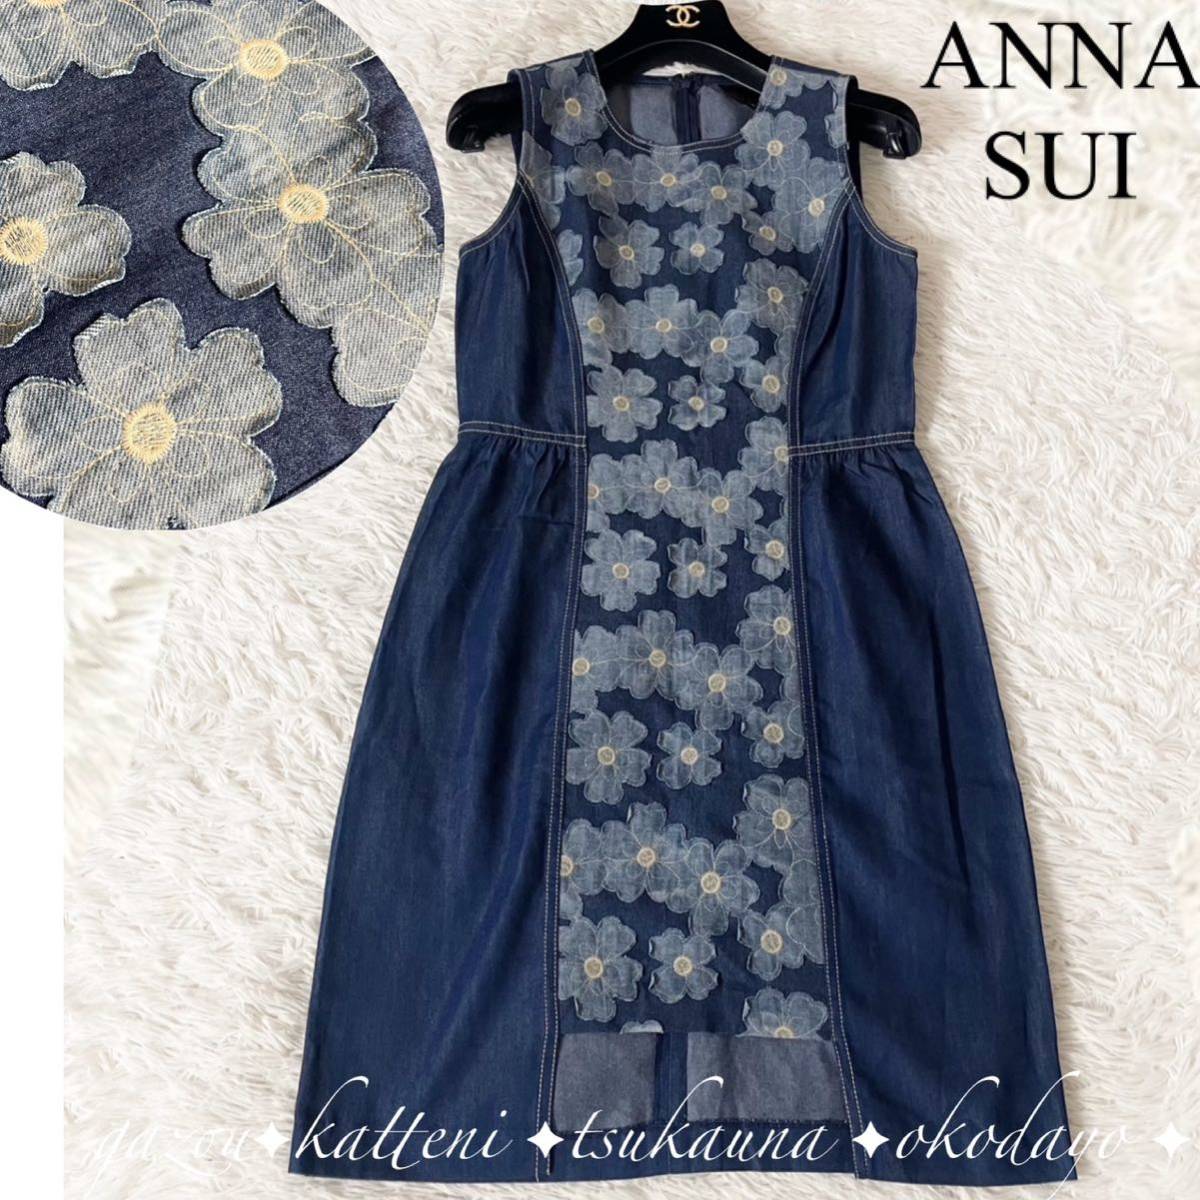 ANNA SUI Anna Sui цветочный принт цветок принт выше like вышивка общий рисунок Denim One-piece безрукавка flair A линия колени длина колено длина синий голубой 